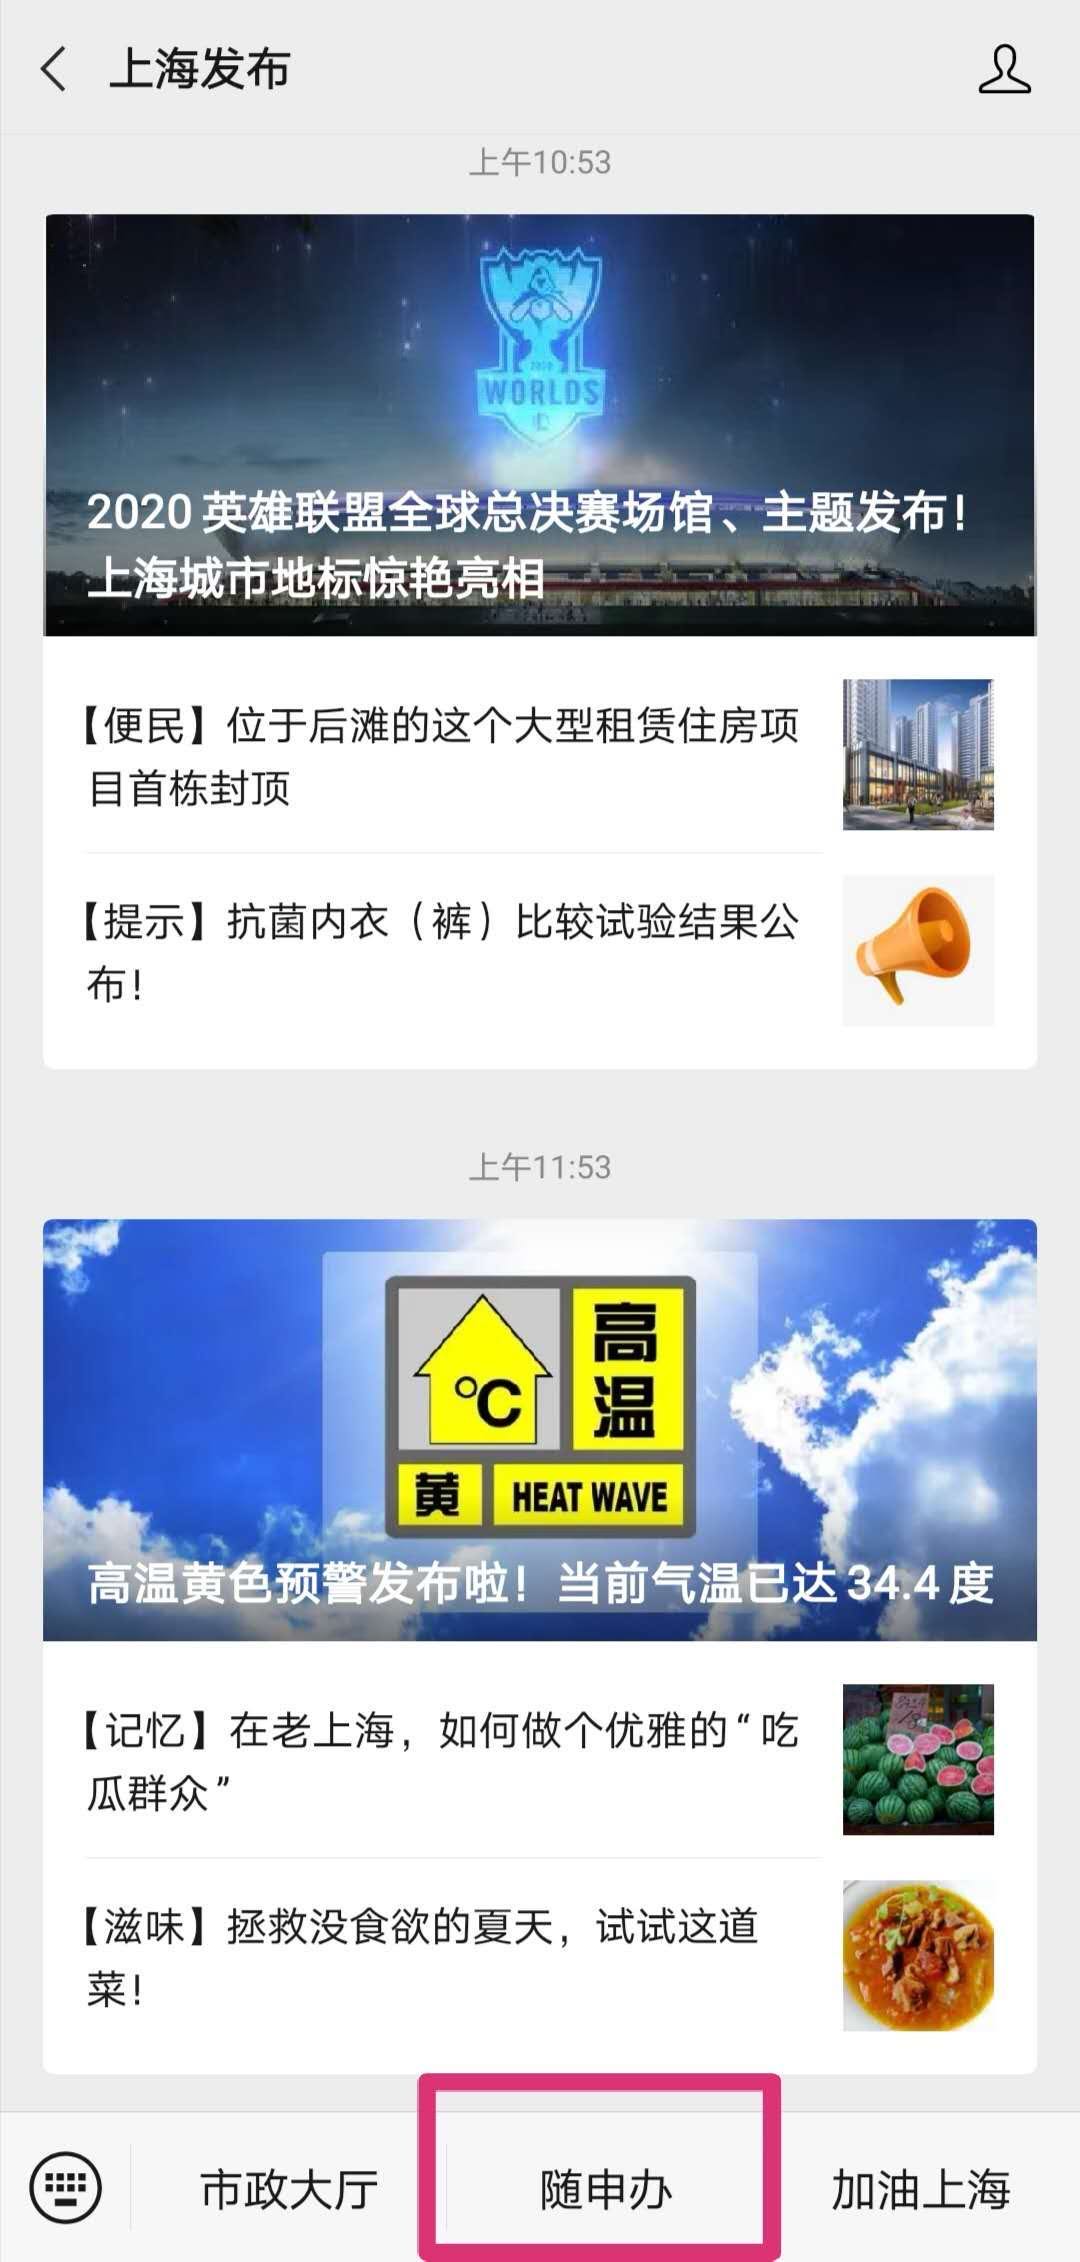 官通 |上海居住登记、居住证新办已经能在线上办理了！